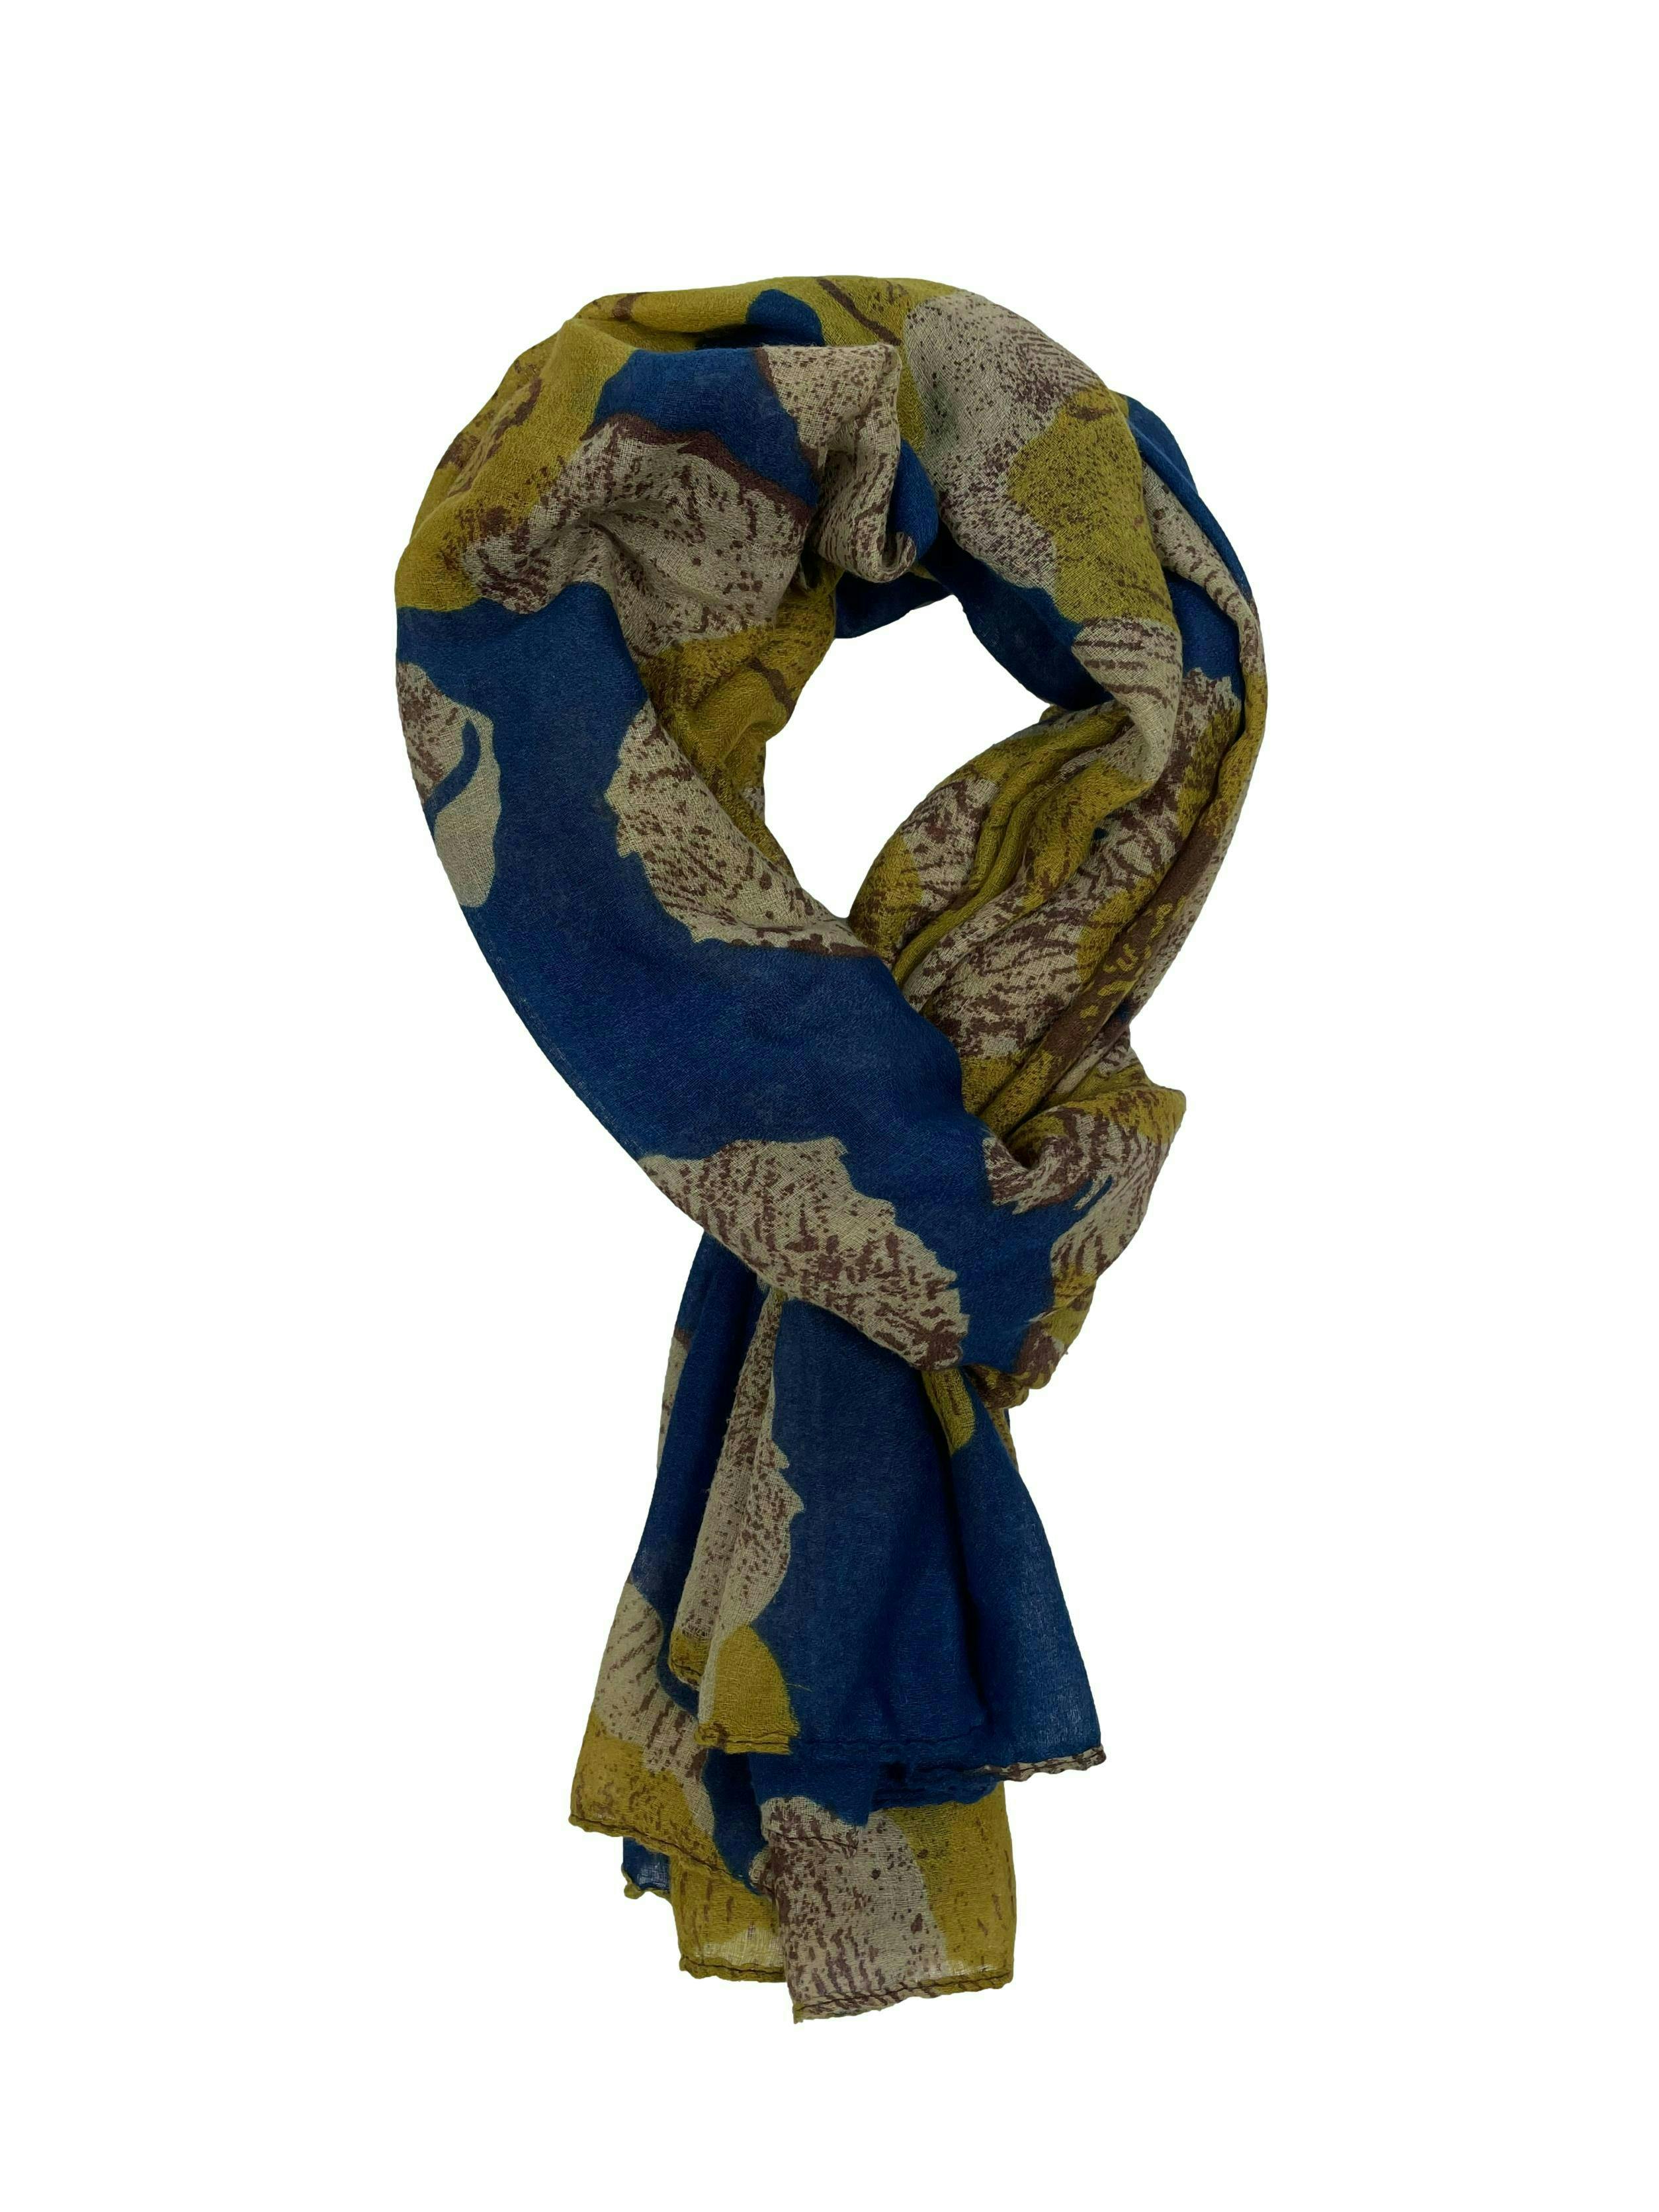 Pañuelo con estampado floral en tonos turquesa, beige y mostaza, tejido delgado. Medidas 82x 176cm.